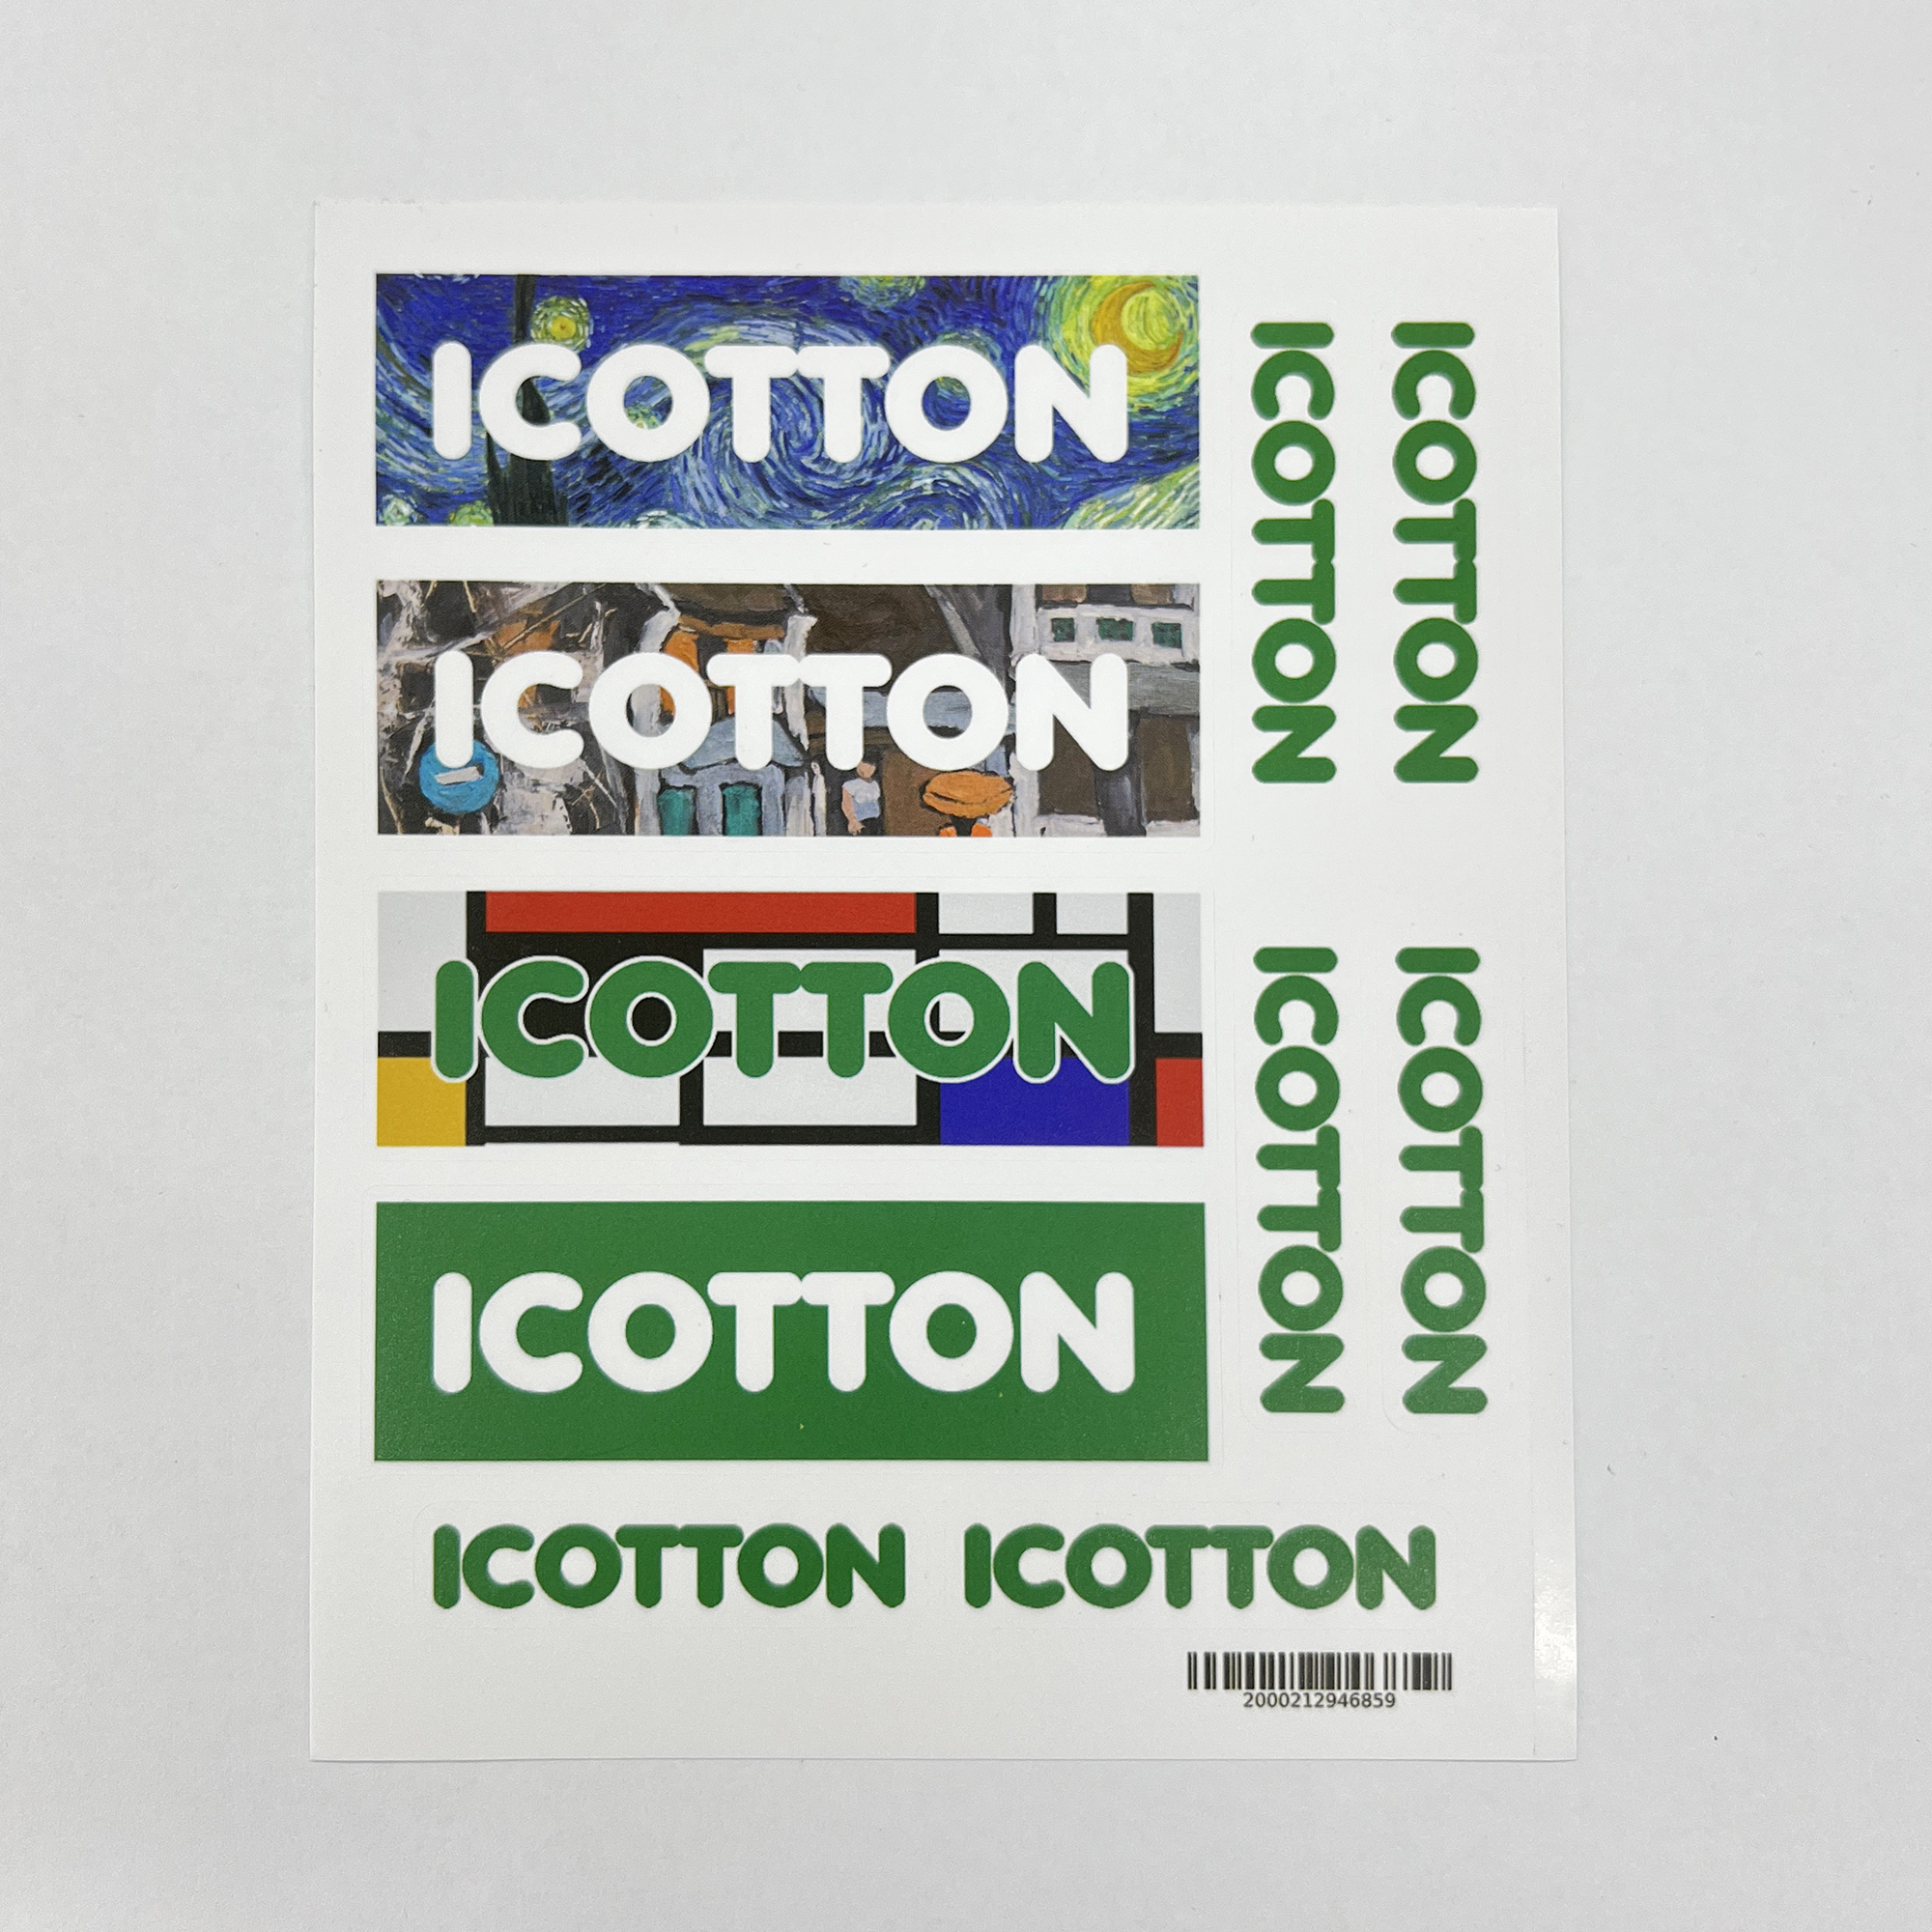 Hình dán Sticker Icotton ART decal bóng mờ